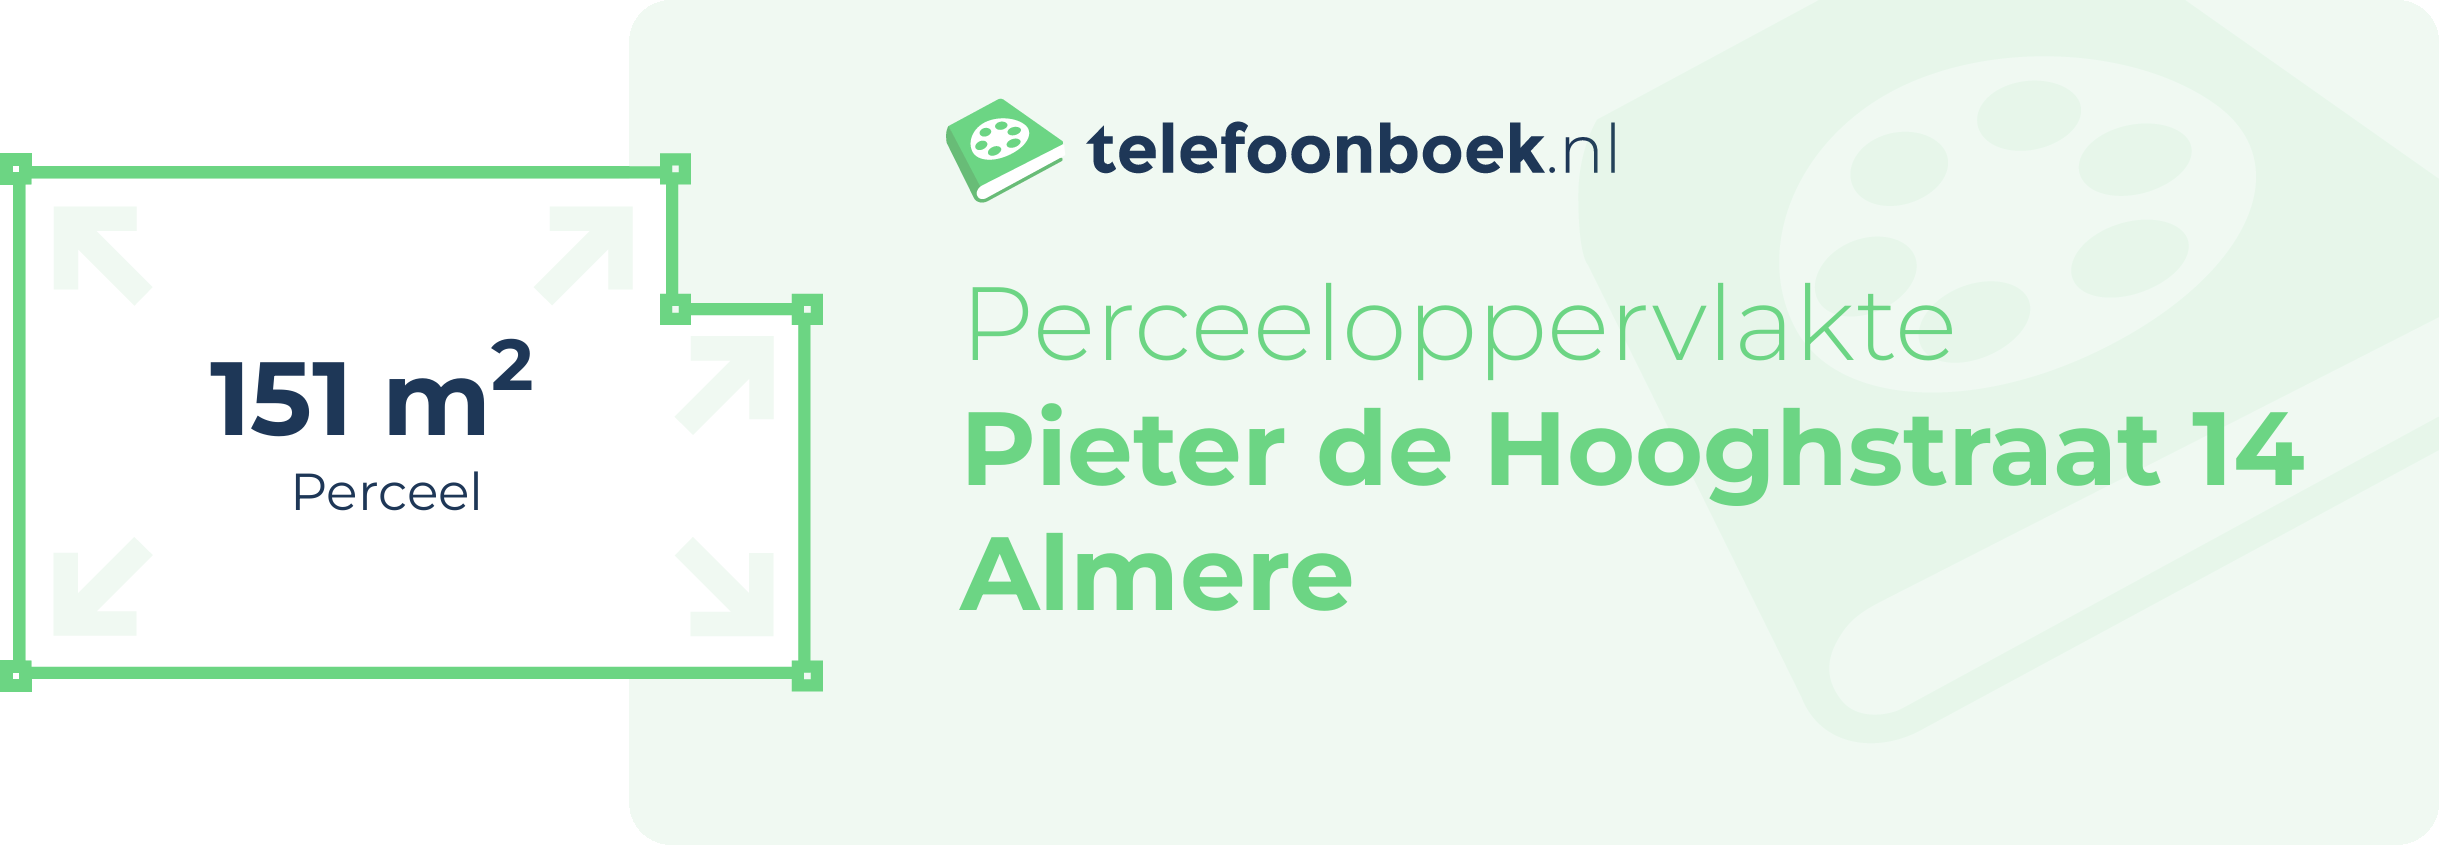 Perceeloppervlakte Pieter De Hooghstraat 14 Almere